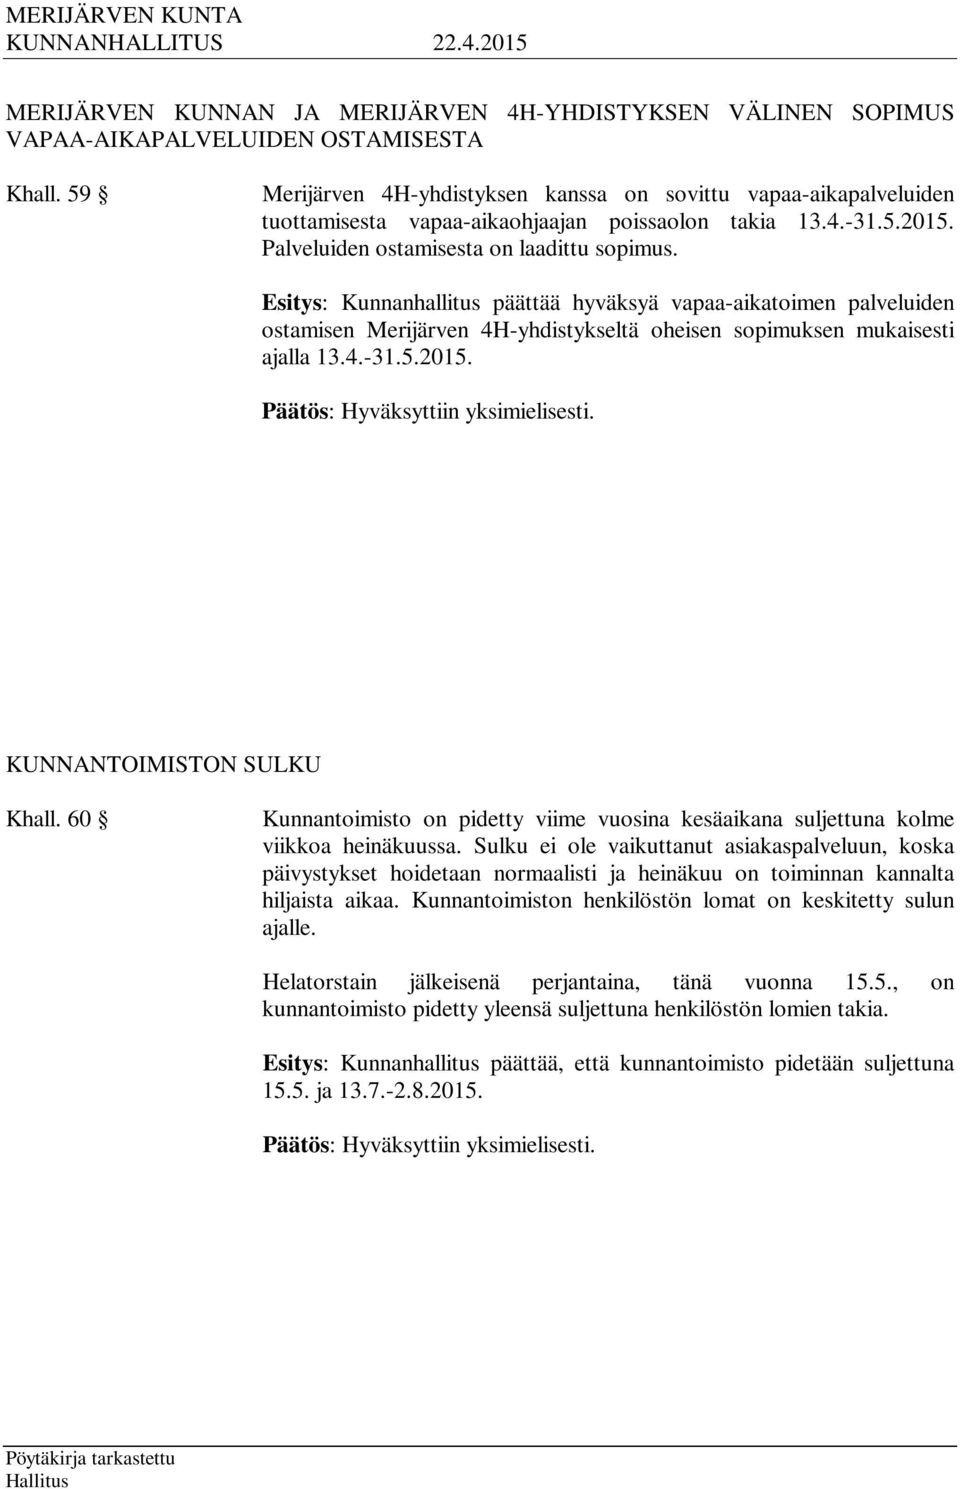 Esitys: Kunnanhallitus päättää hyväksyä vapaa-aikatoimen palveluiden ostamisen Merijärven 4H-yhdistykseltä oheisen sopimuksen mukaisesti ajalla 13.4.-31.5.2015. KUNNANTOIMISTON SULKU Khall.